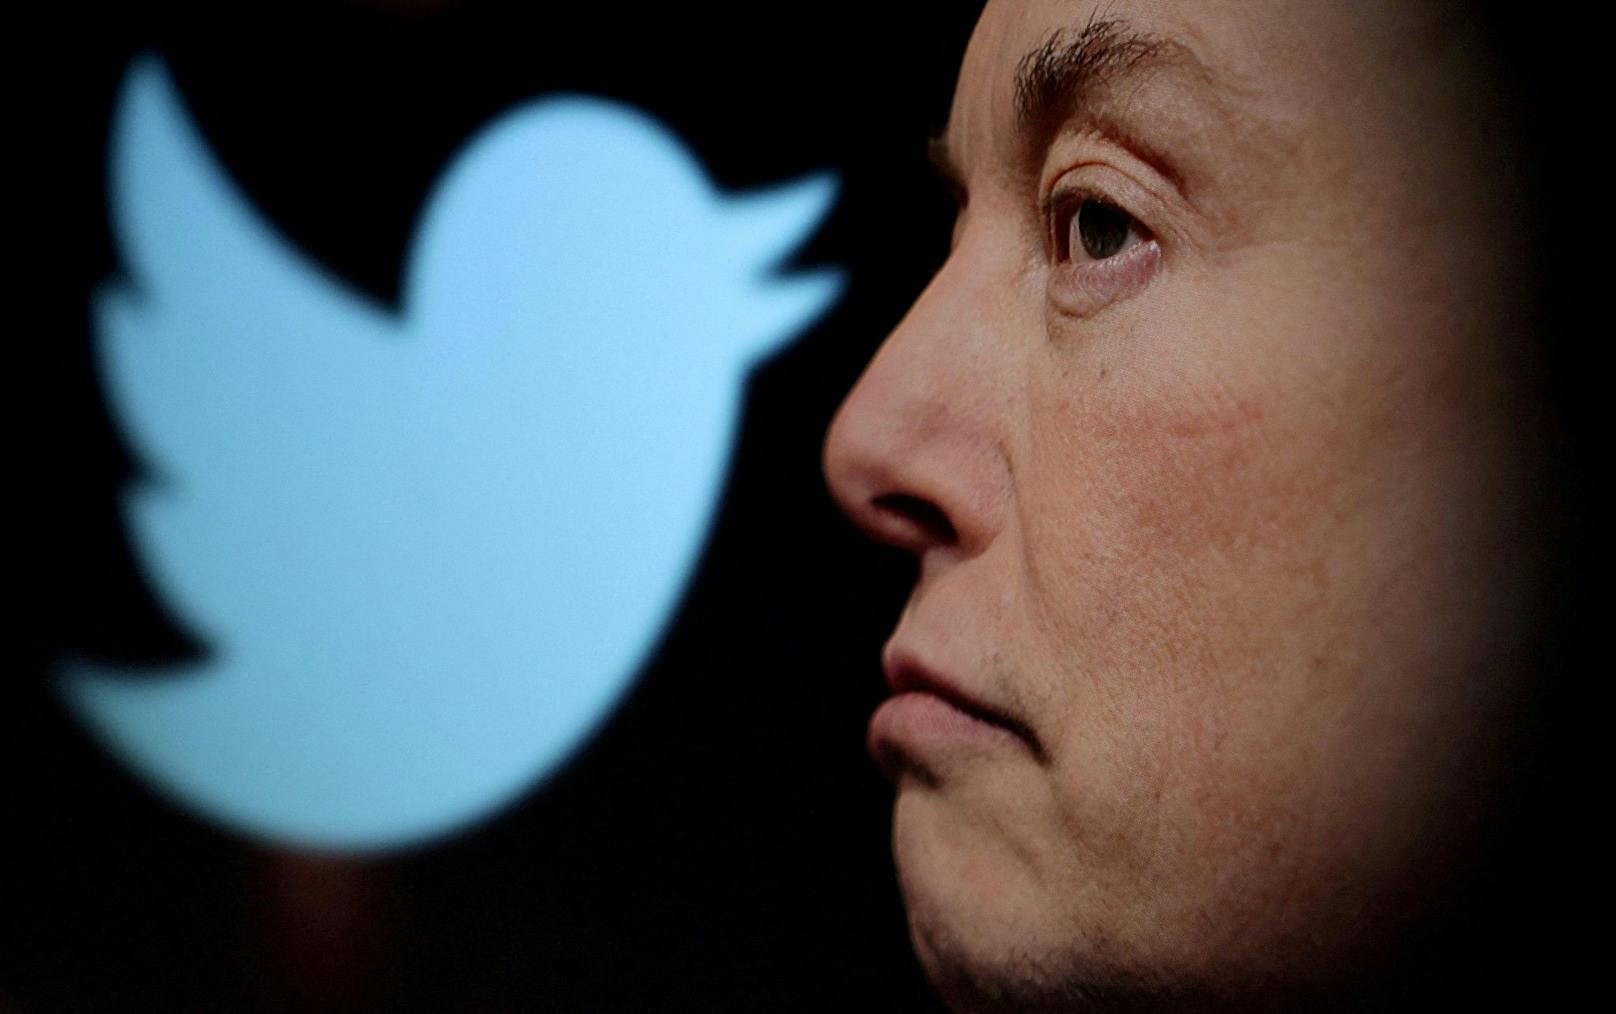 "Account gesperrt": Twitter-Chef Elon Musk greift gegen die Seite @ElonJet durch. (Archivbild)